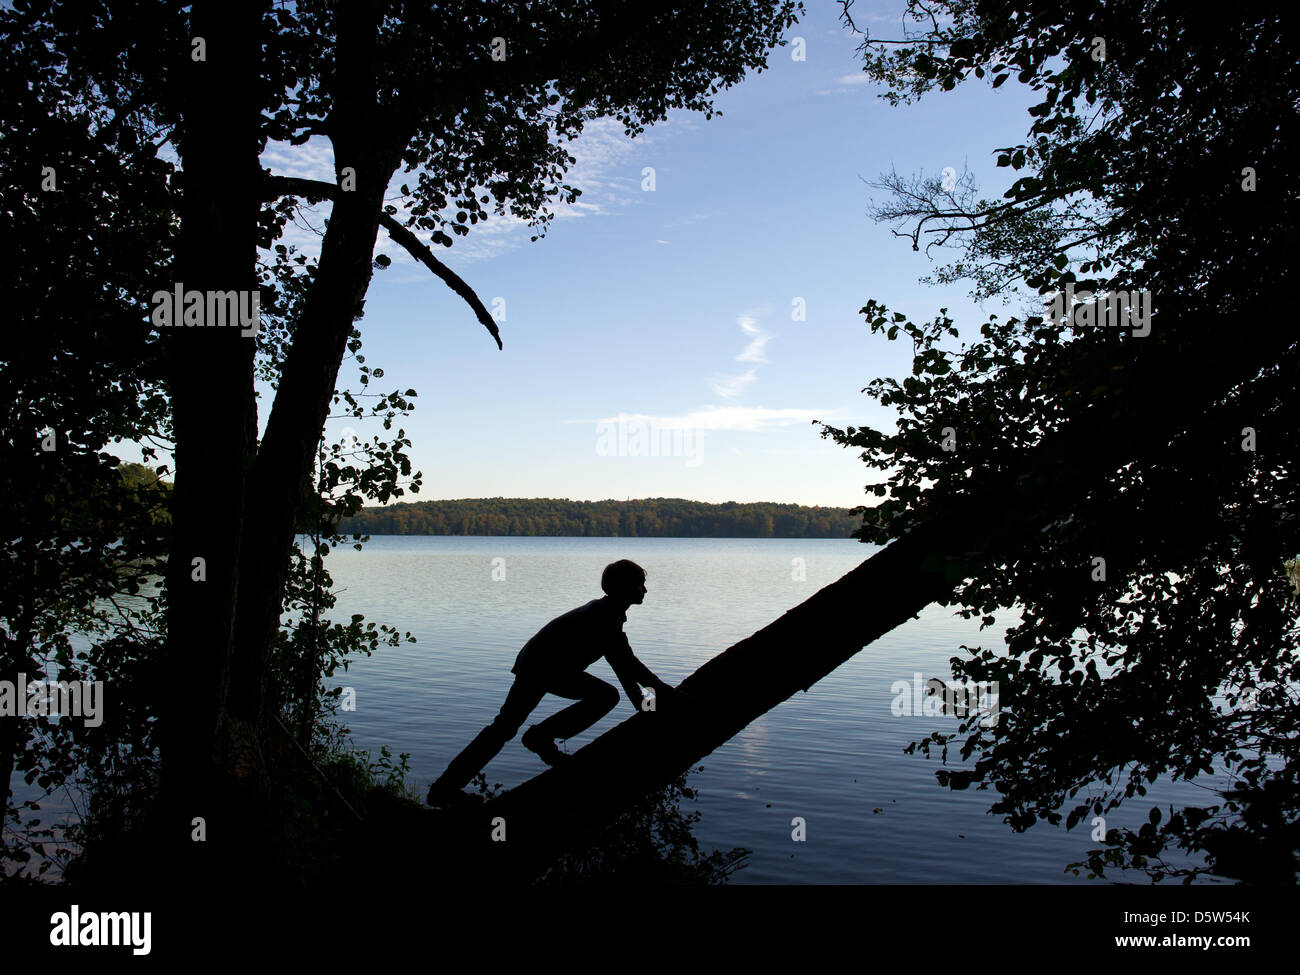 Un garçon grimpe dans un arbre à Werbellin Lake dans la réserve de biosphère Schorfheide-Chorin à côté de Joachimstal, Allemagne, 2 octobre 2012. Schorfheide-Chorin est répertorié comme l'un des plus de 300 réserves de biosphère dans le monde par l'UNESCO en 1990. Avec une surface totale de 1291,61, c'est l'une des plus grandes réserves de l'Allemagne. Situé à environ 100 km au nord de Berlin, le titre protège désormais un paysage qui Banque D'Images